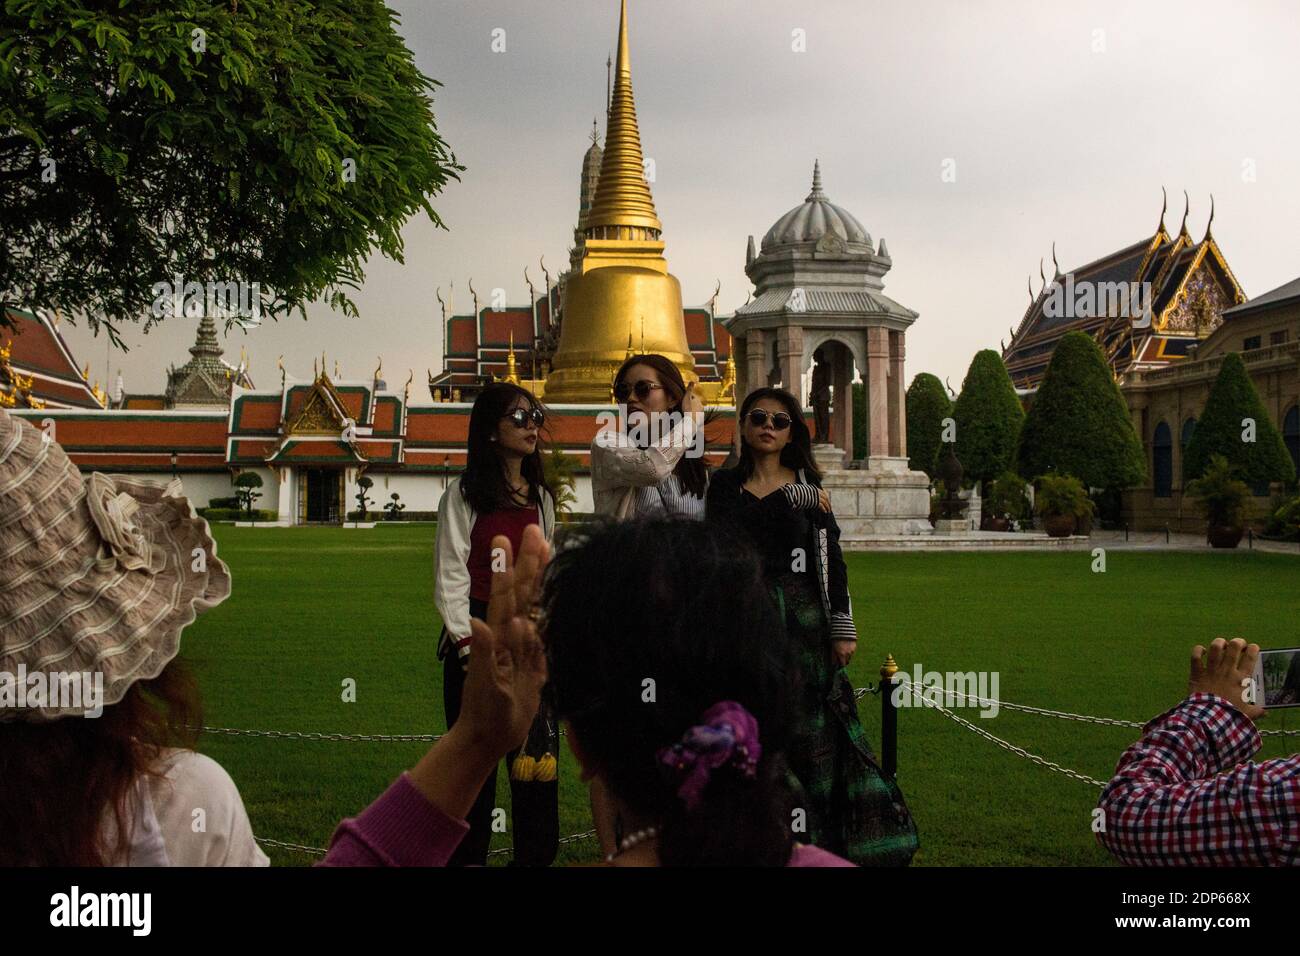 THA - PALAIS ROYAL DE BANGKOK Tourisme au Palais Royal de Bangkok. THA - ROYAL PALACE OF BANGKOK Tourism at the Royal Palace in Bangkok. Stock Photo